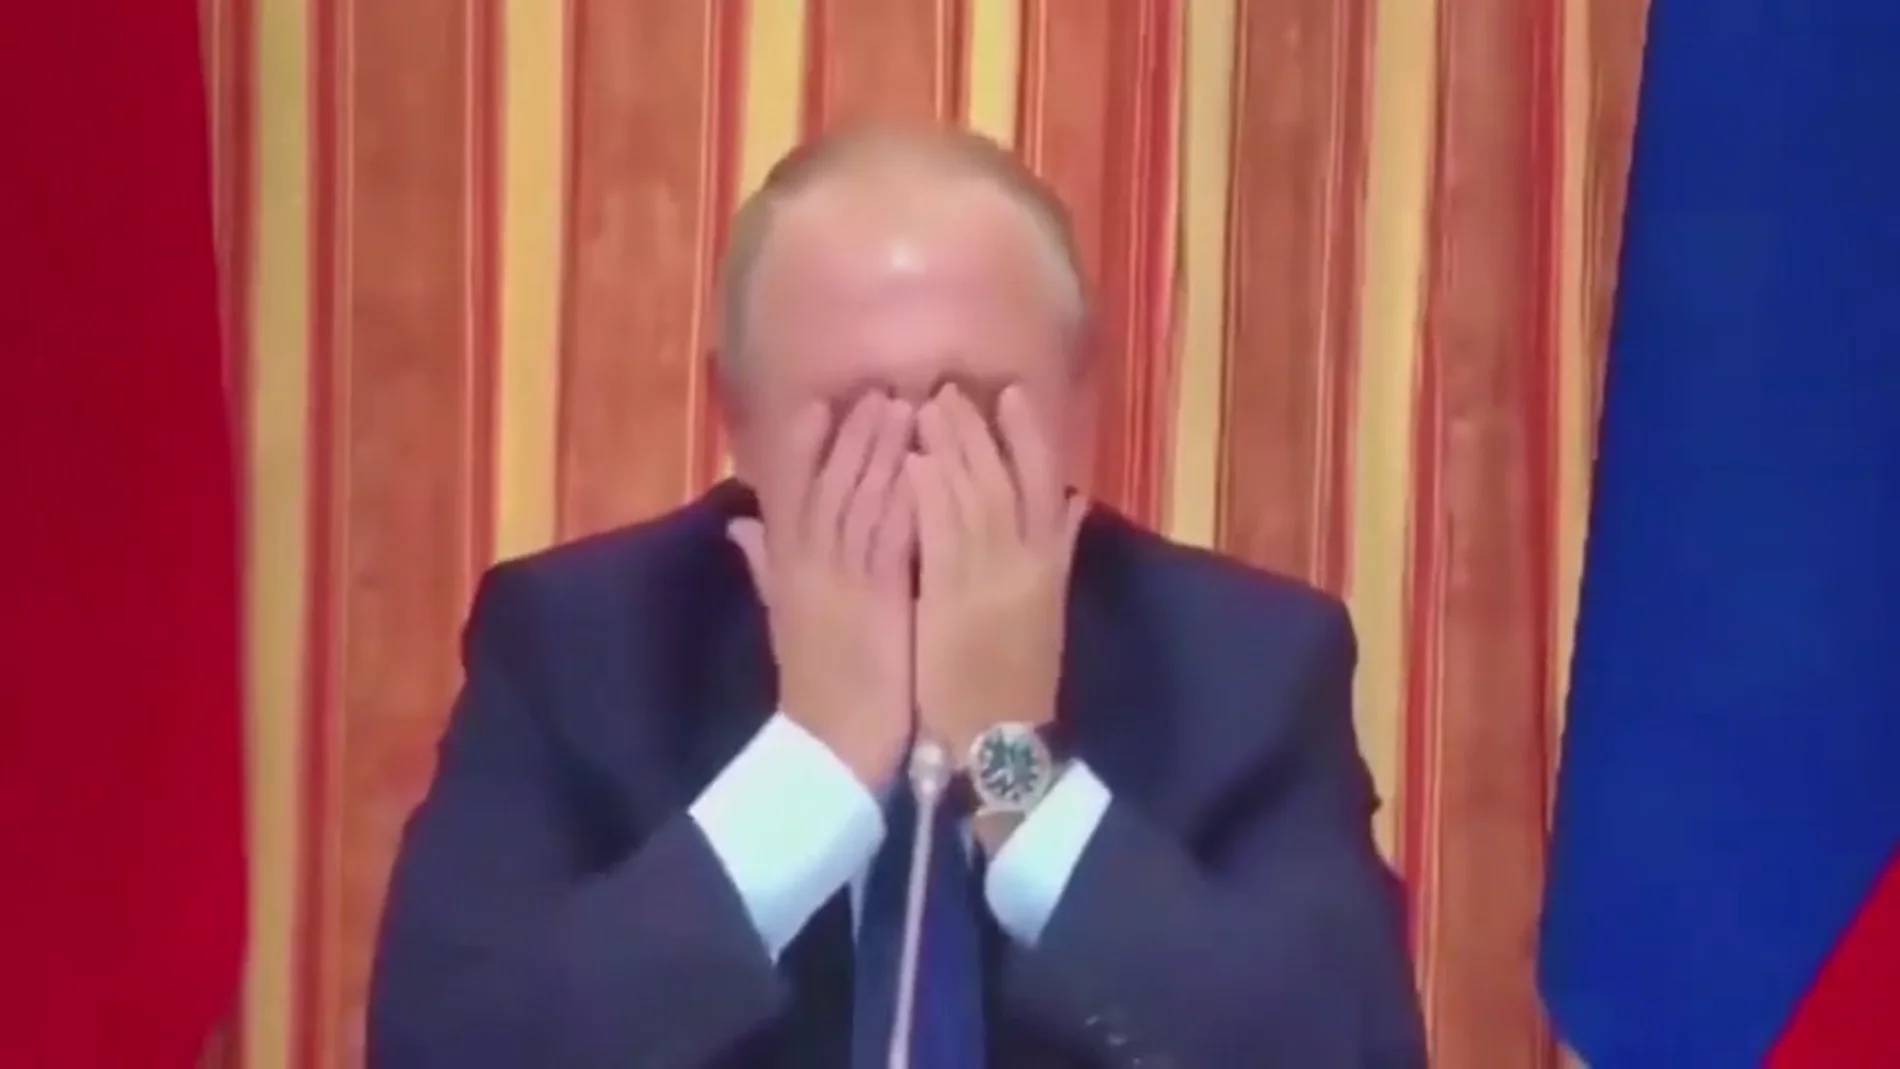 Putin se parte de risa después de que su ministro sugiriera exportar cerdo a Indonesia, país musulmán